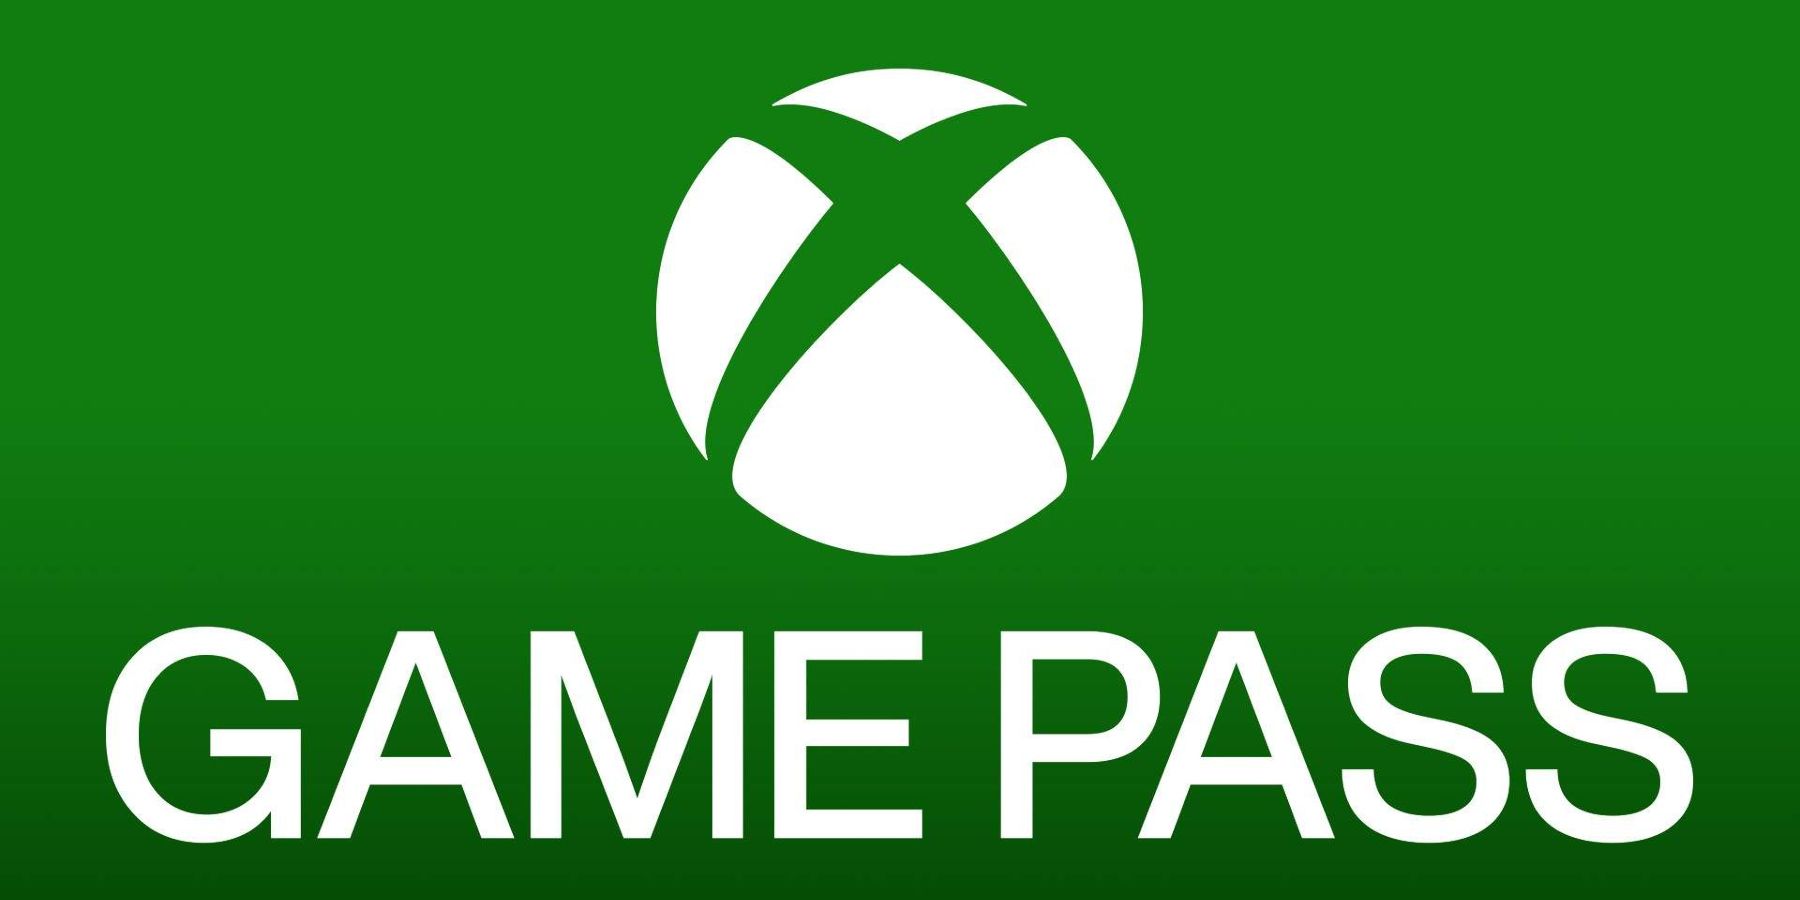 AKTUALIZÁCIA: Počet predplatiteľov Xbox Game Pass je 30 miliónov, hovorí generálny riaditeľ spoločnosti Take-Two